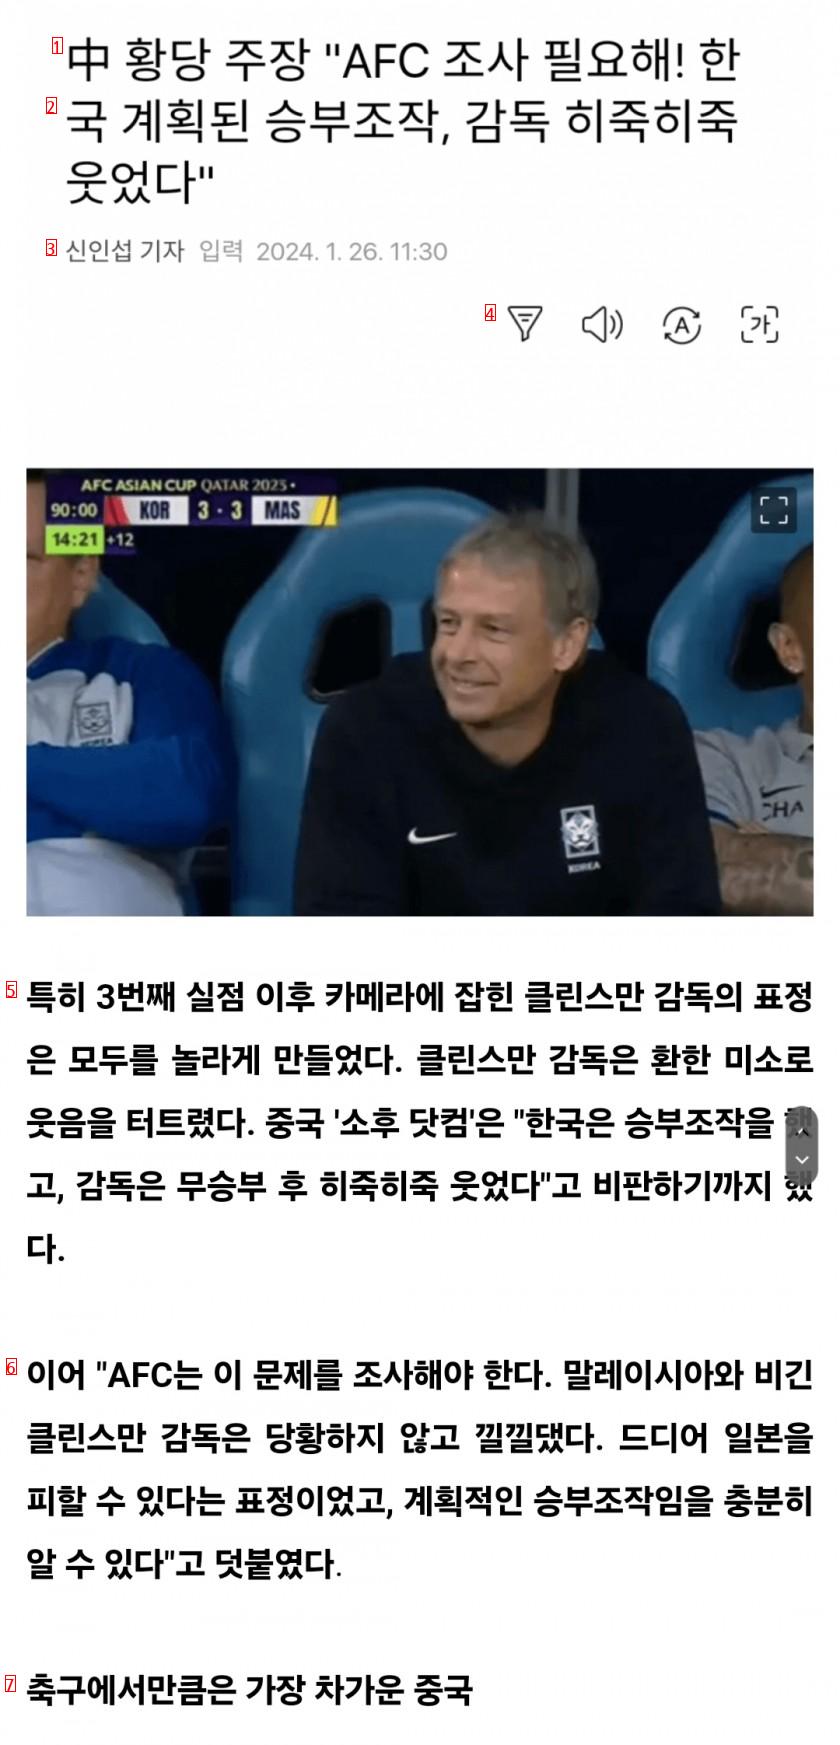 韓国がサッカーの八百長をしたという中国